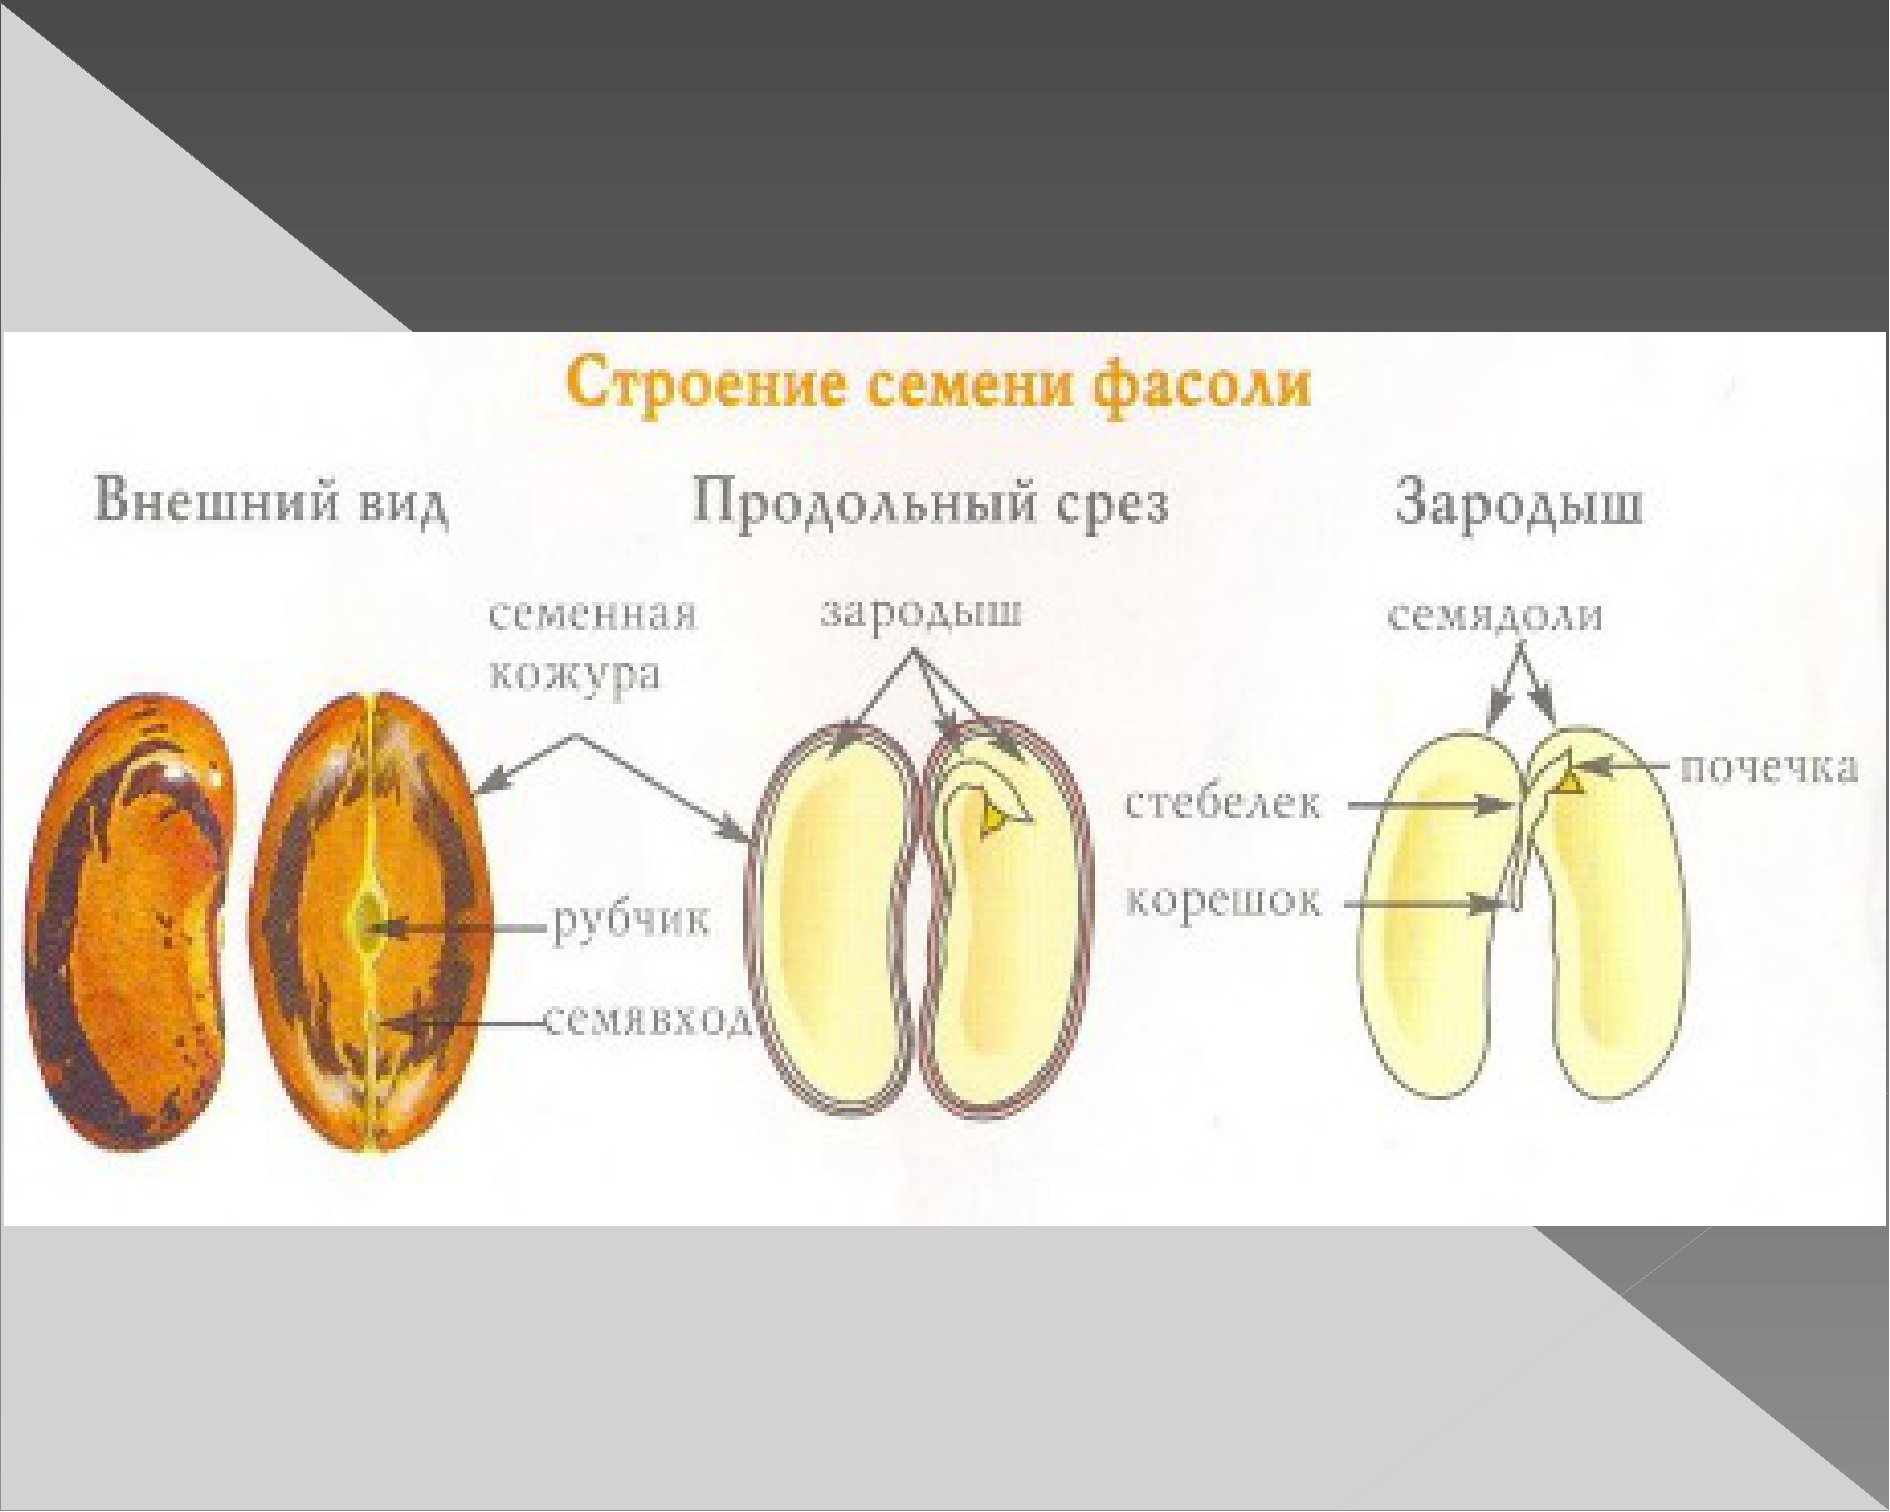 Семя фасоли зародыш семенная кожура